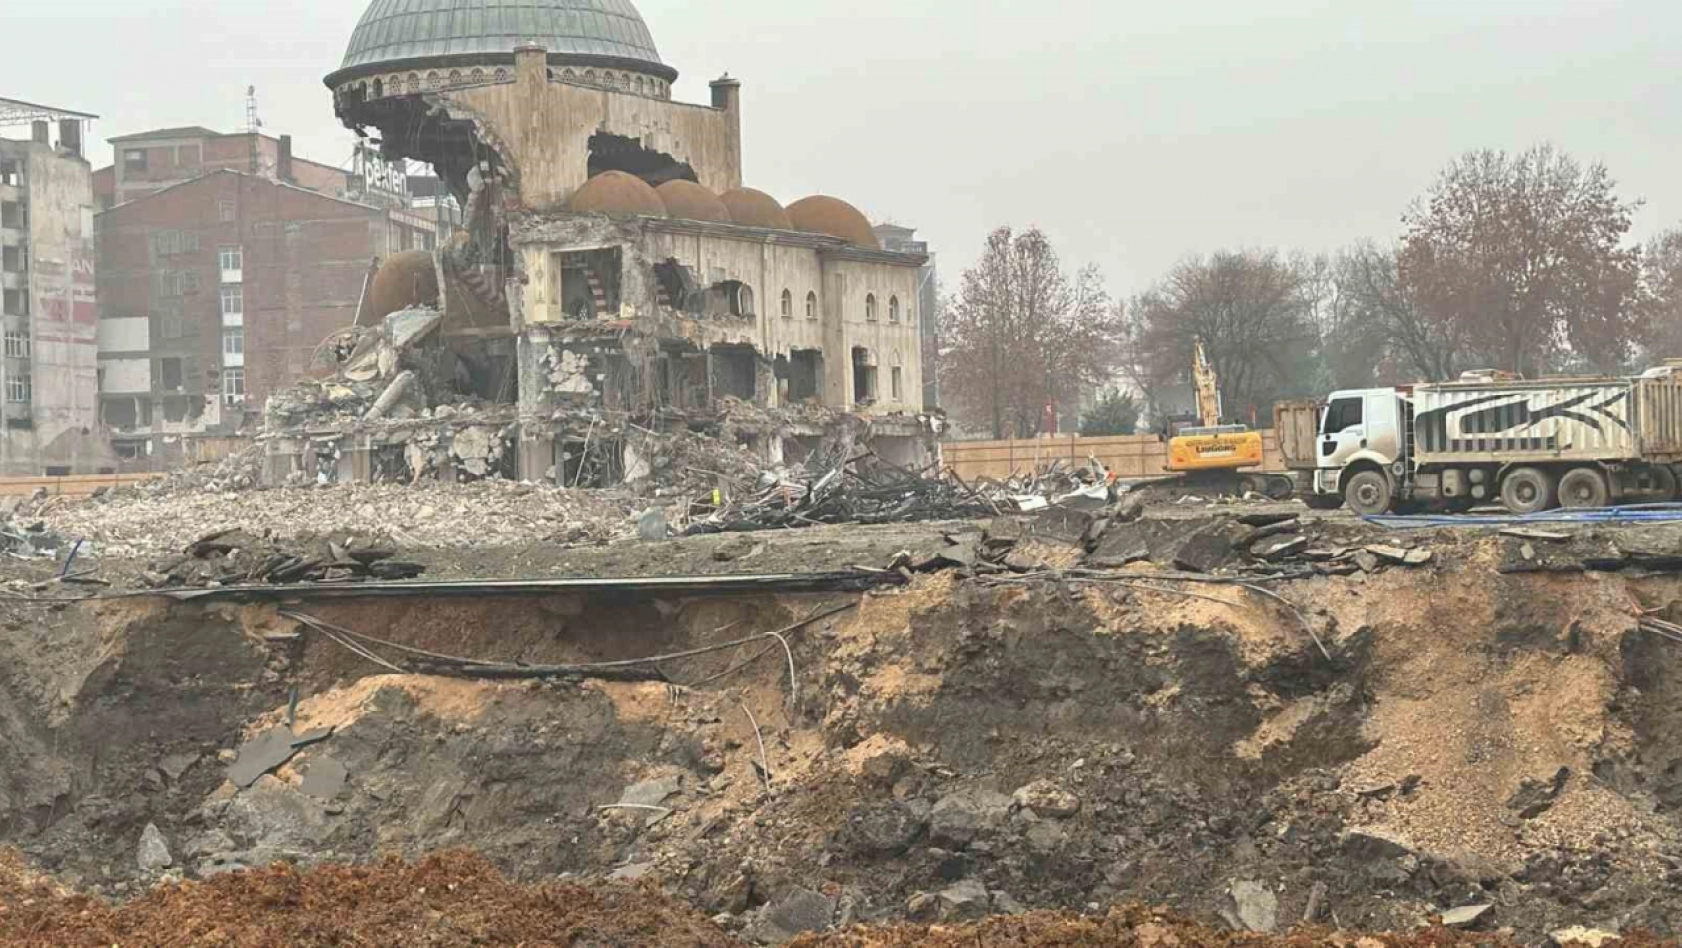 Depremde hasar alan Söğütlü Camii'nin kubbesi böyle yıkıldı